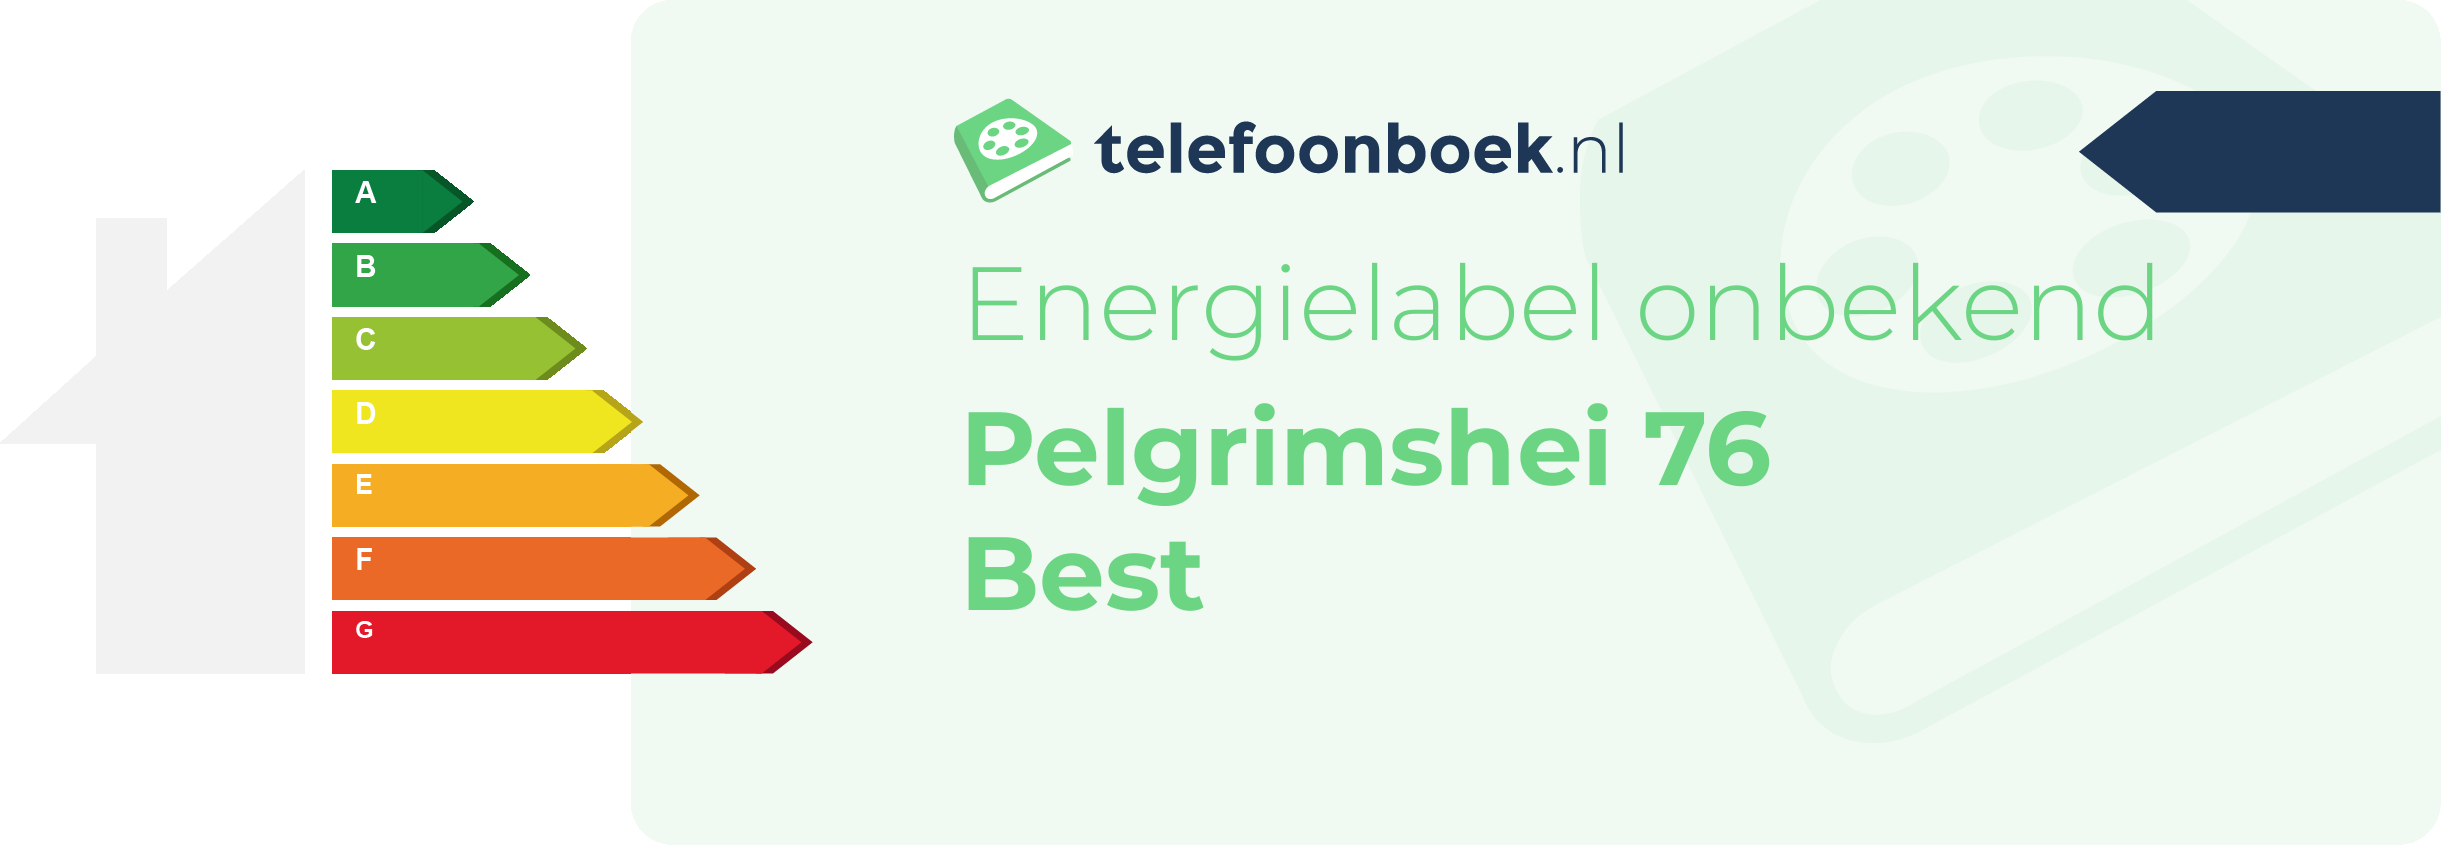 Energielabel Pelgrimshei 76 Best